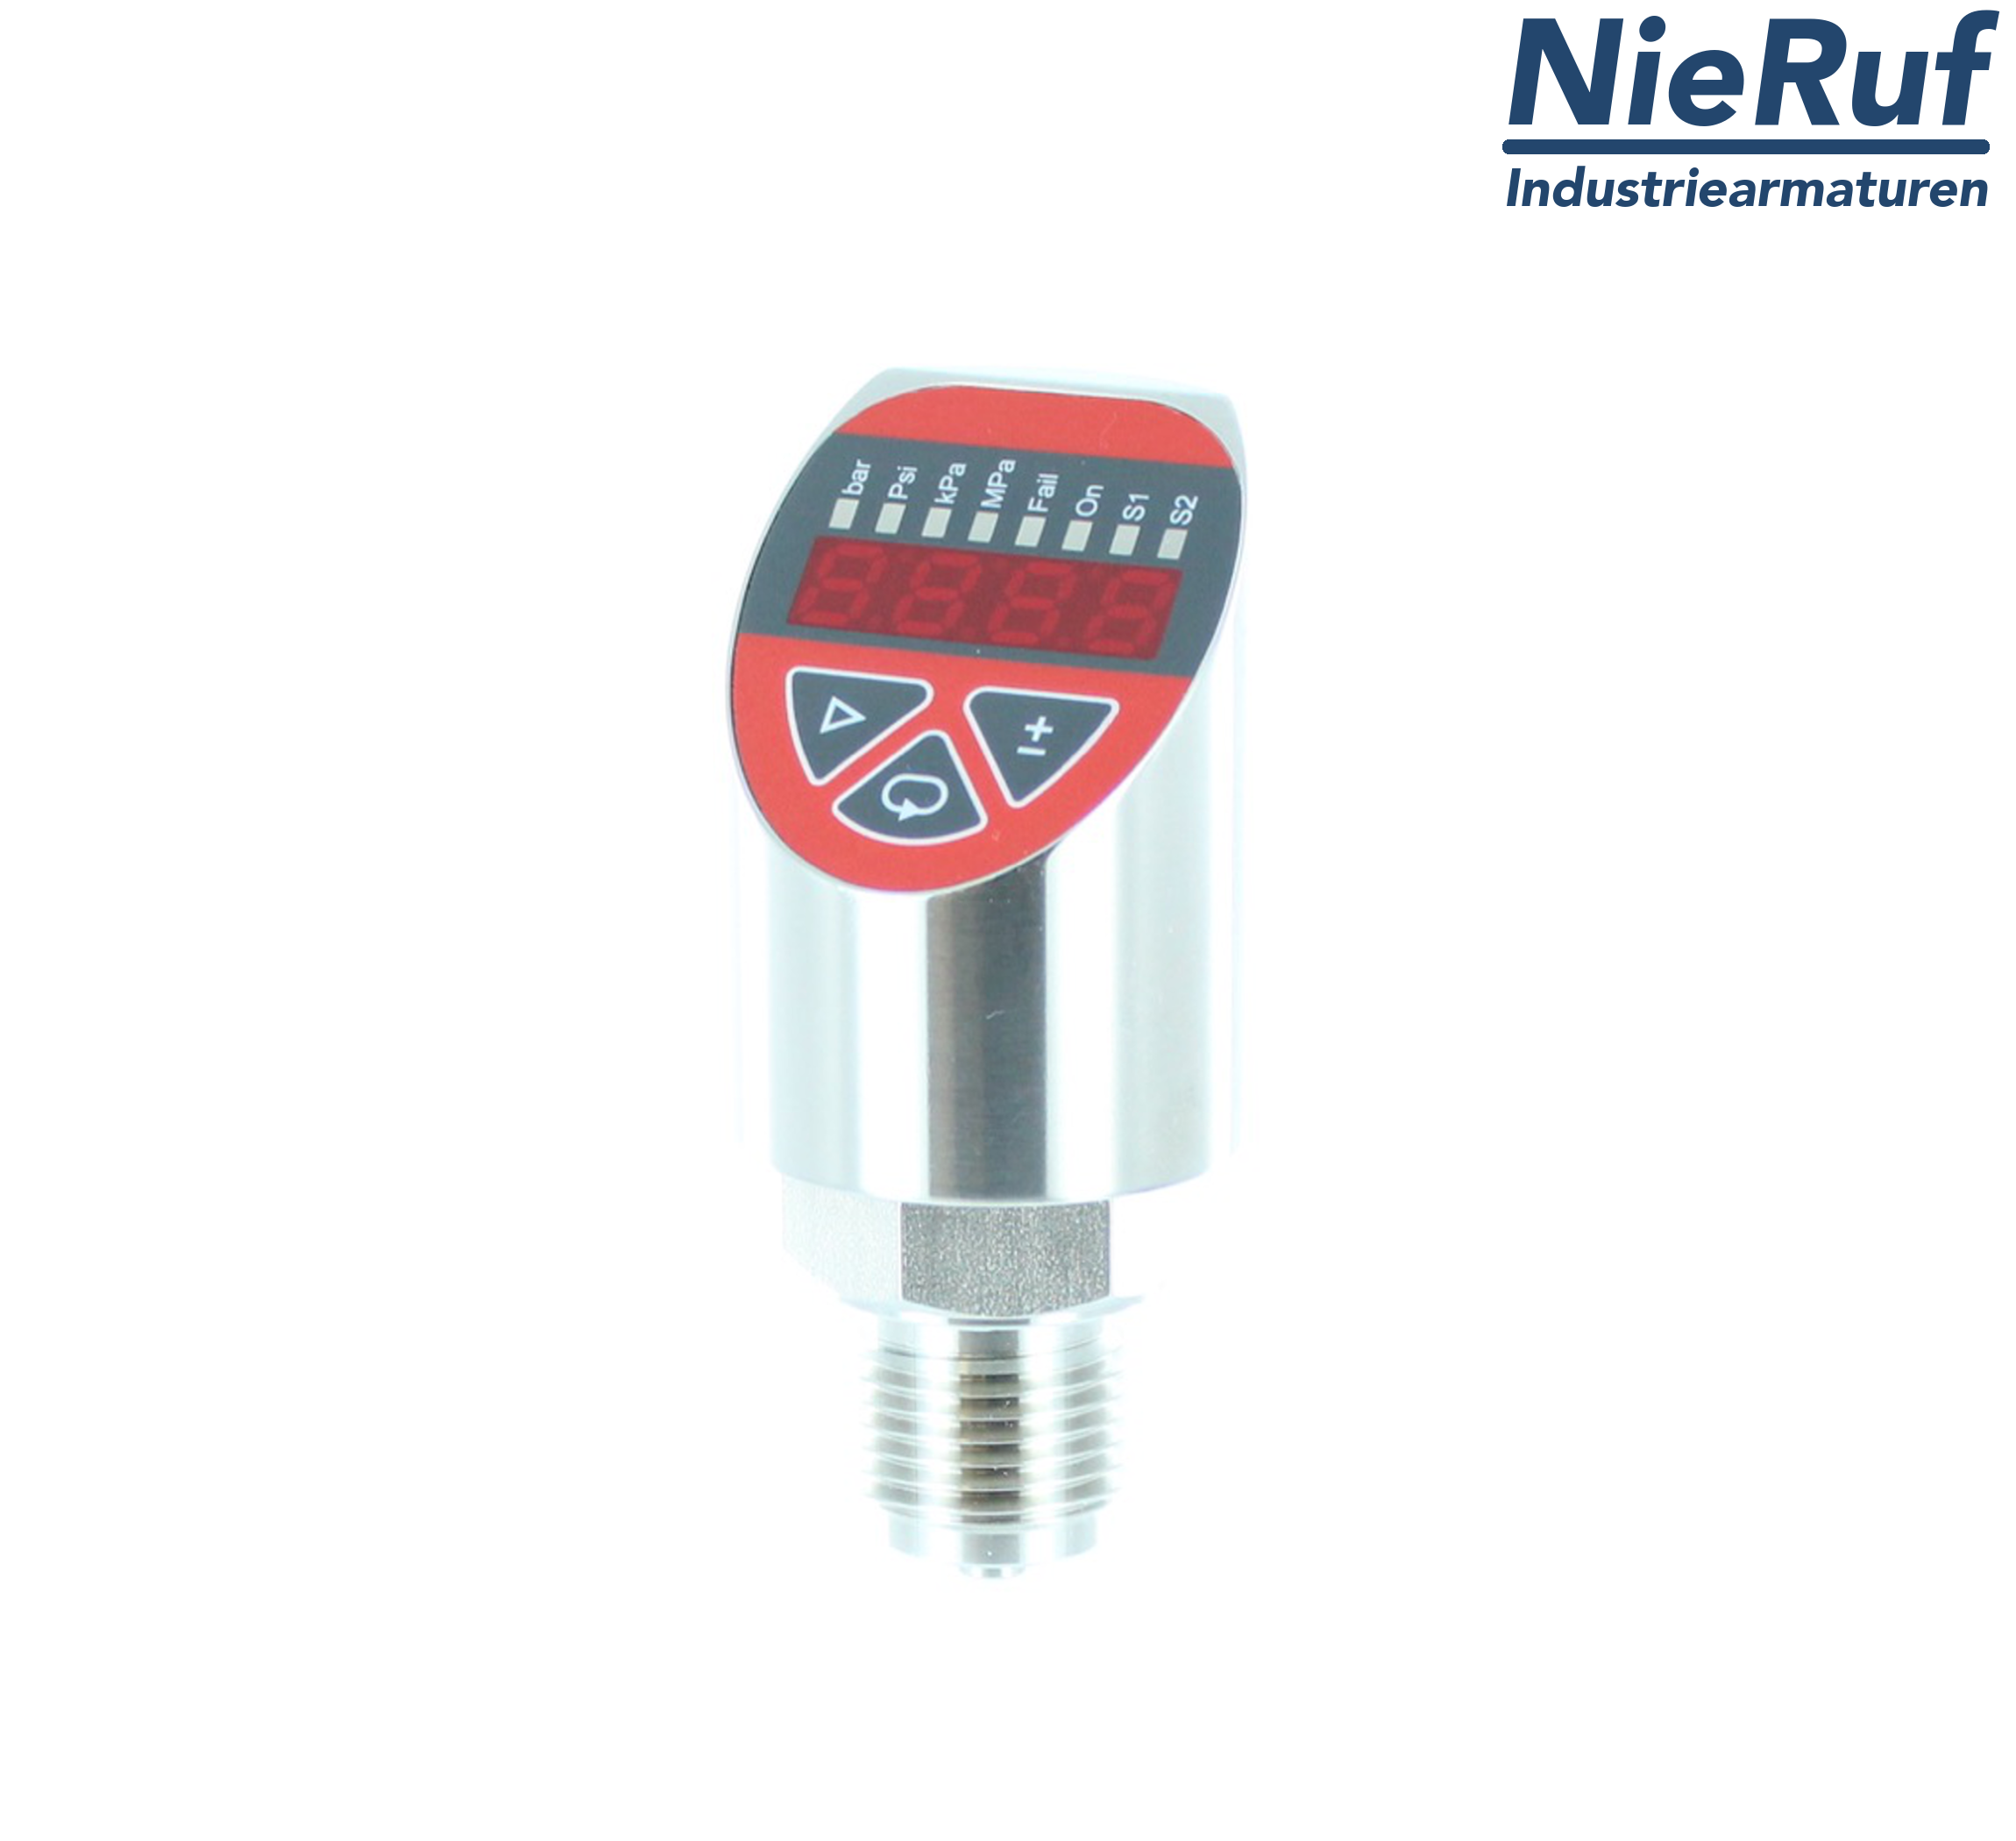 digital pressure sensor G 1/4" B 4-wire: 1xPNP, 1x4 - 20mA, Desina FPM 0,0 - 1,0 bar